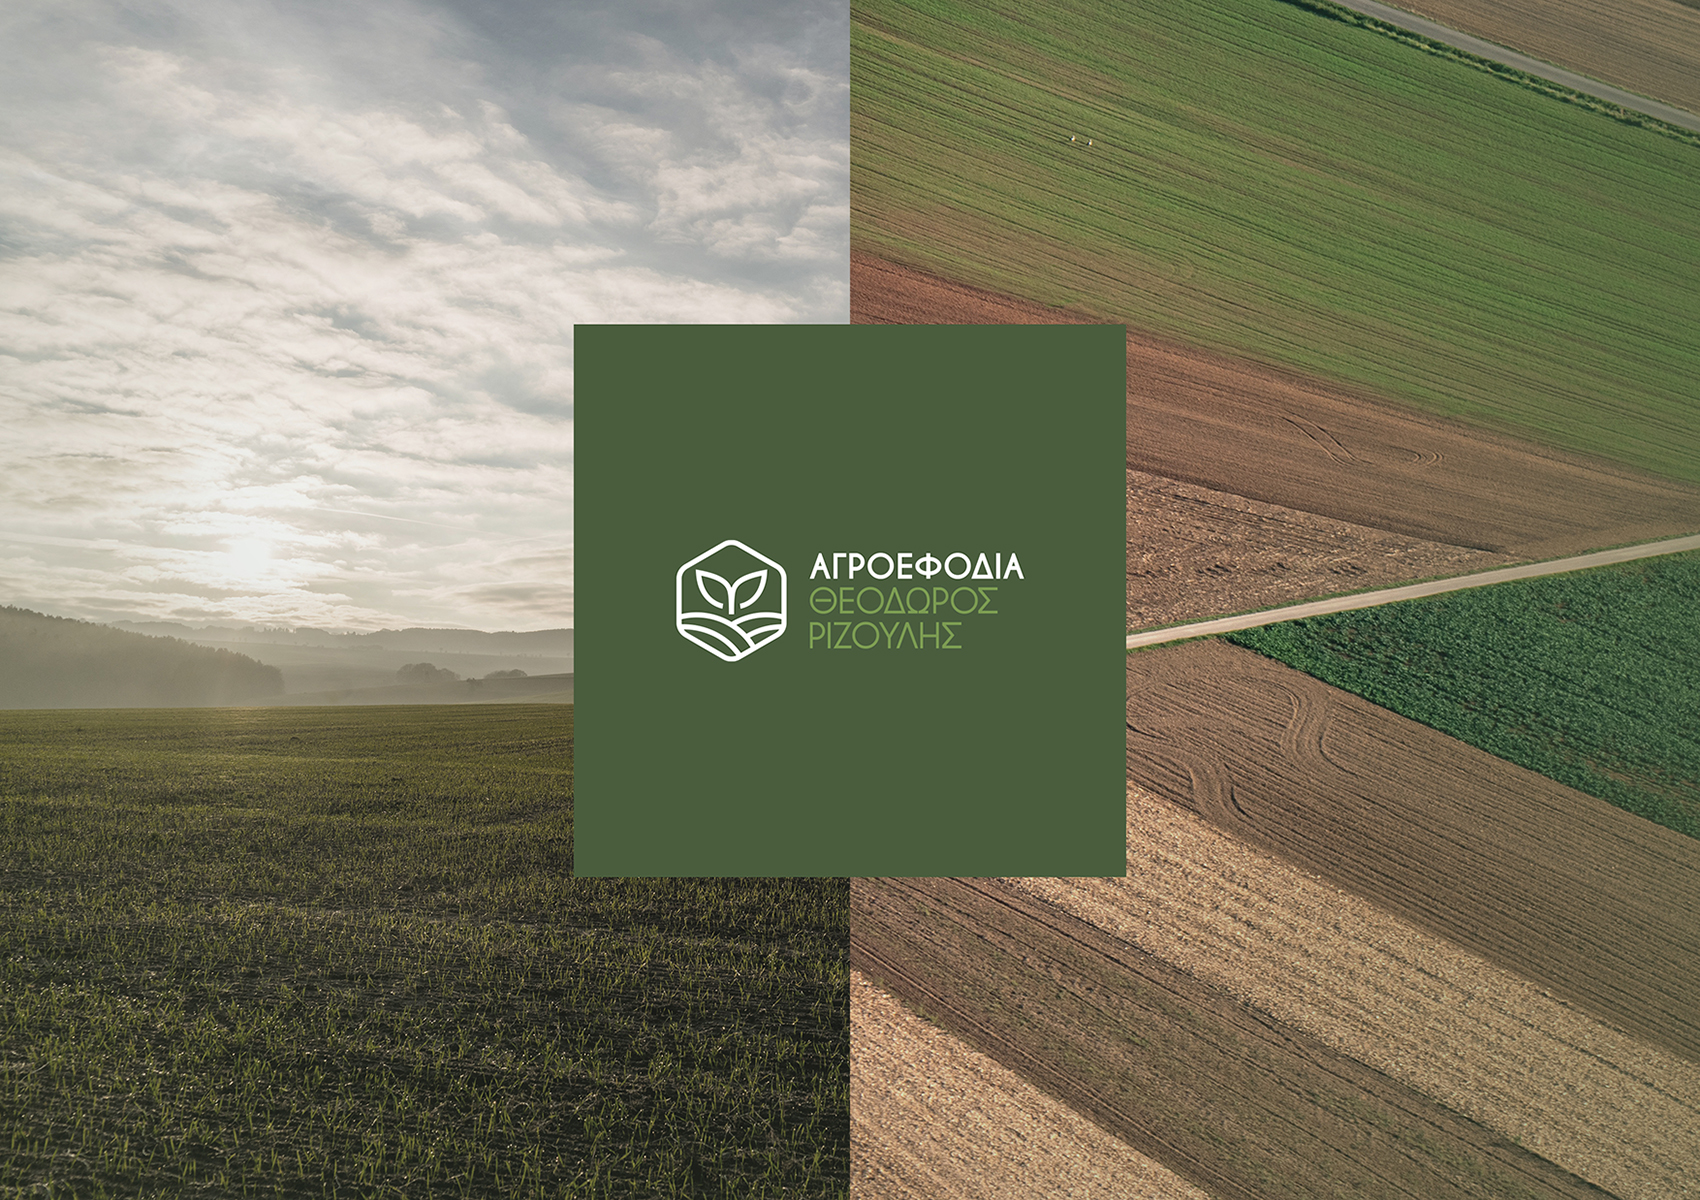 Agroefodia Rizoulis Logo 1700x1200 by xhristakis